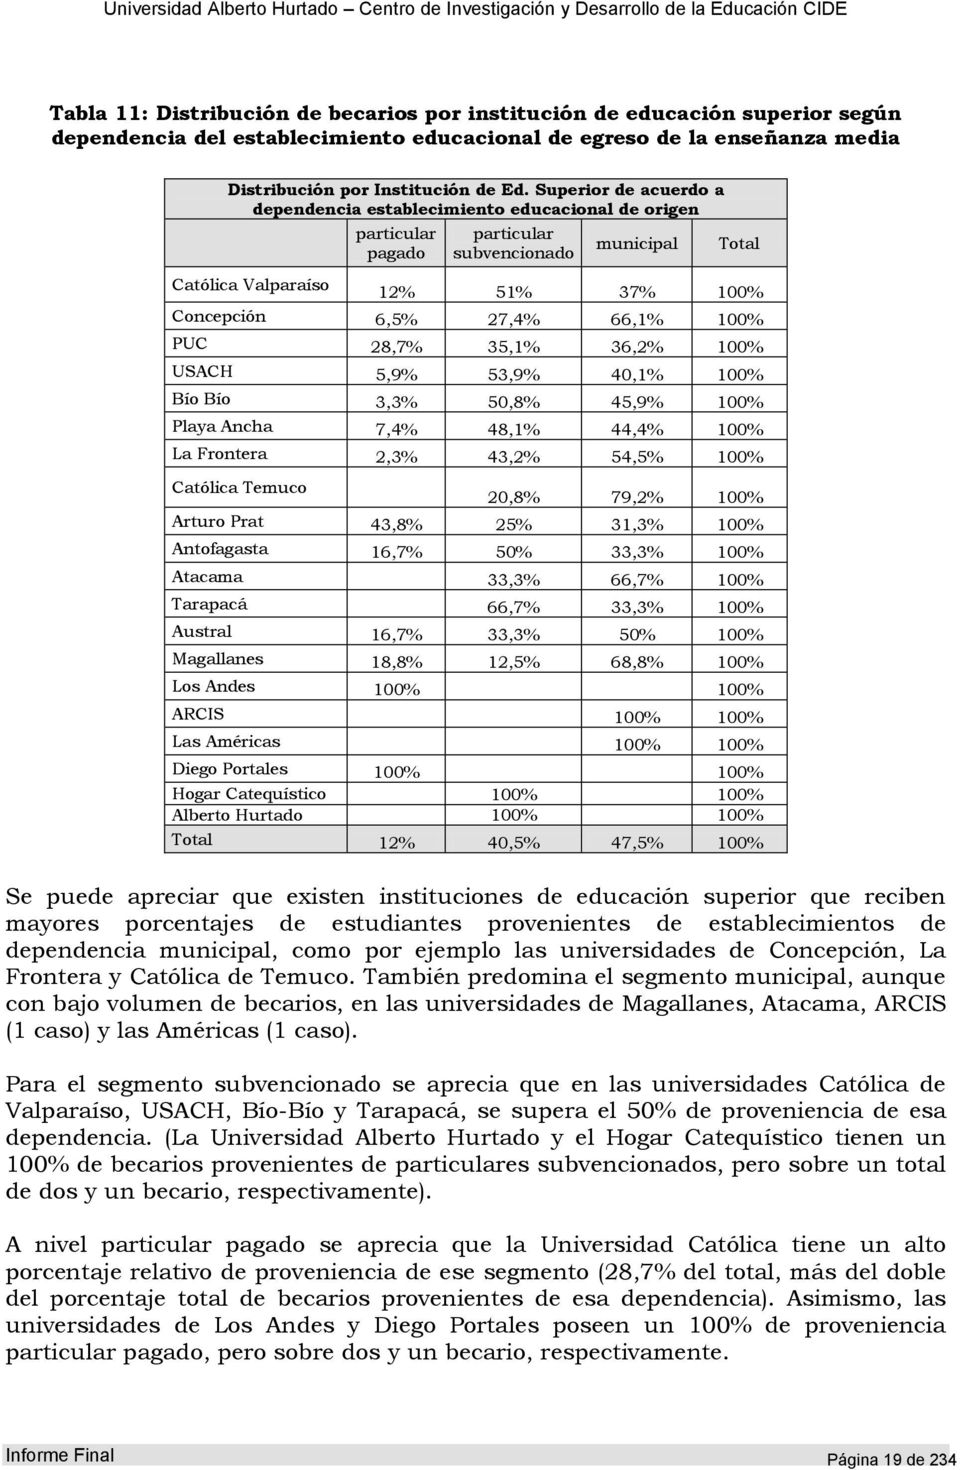 100% PUC 28,7% 35,1% 36,2% 100% USACH 5,9% 53,9% 40,1% 100% Bío Bío 3,3% 50,8% 45,9% 100% Playa Ancha 7,4% 48,1% 44,4% 100% La Frontera 2,3% 43,2% 54,5% 100% Católica Temuco 20,8% 79,2% 100% Arturo